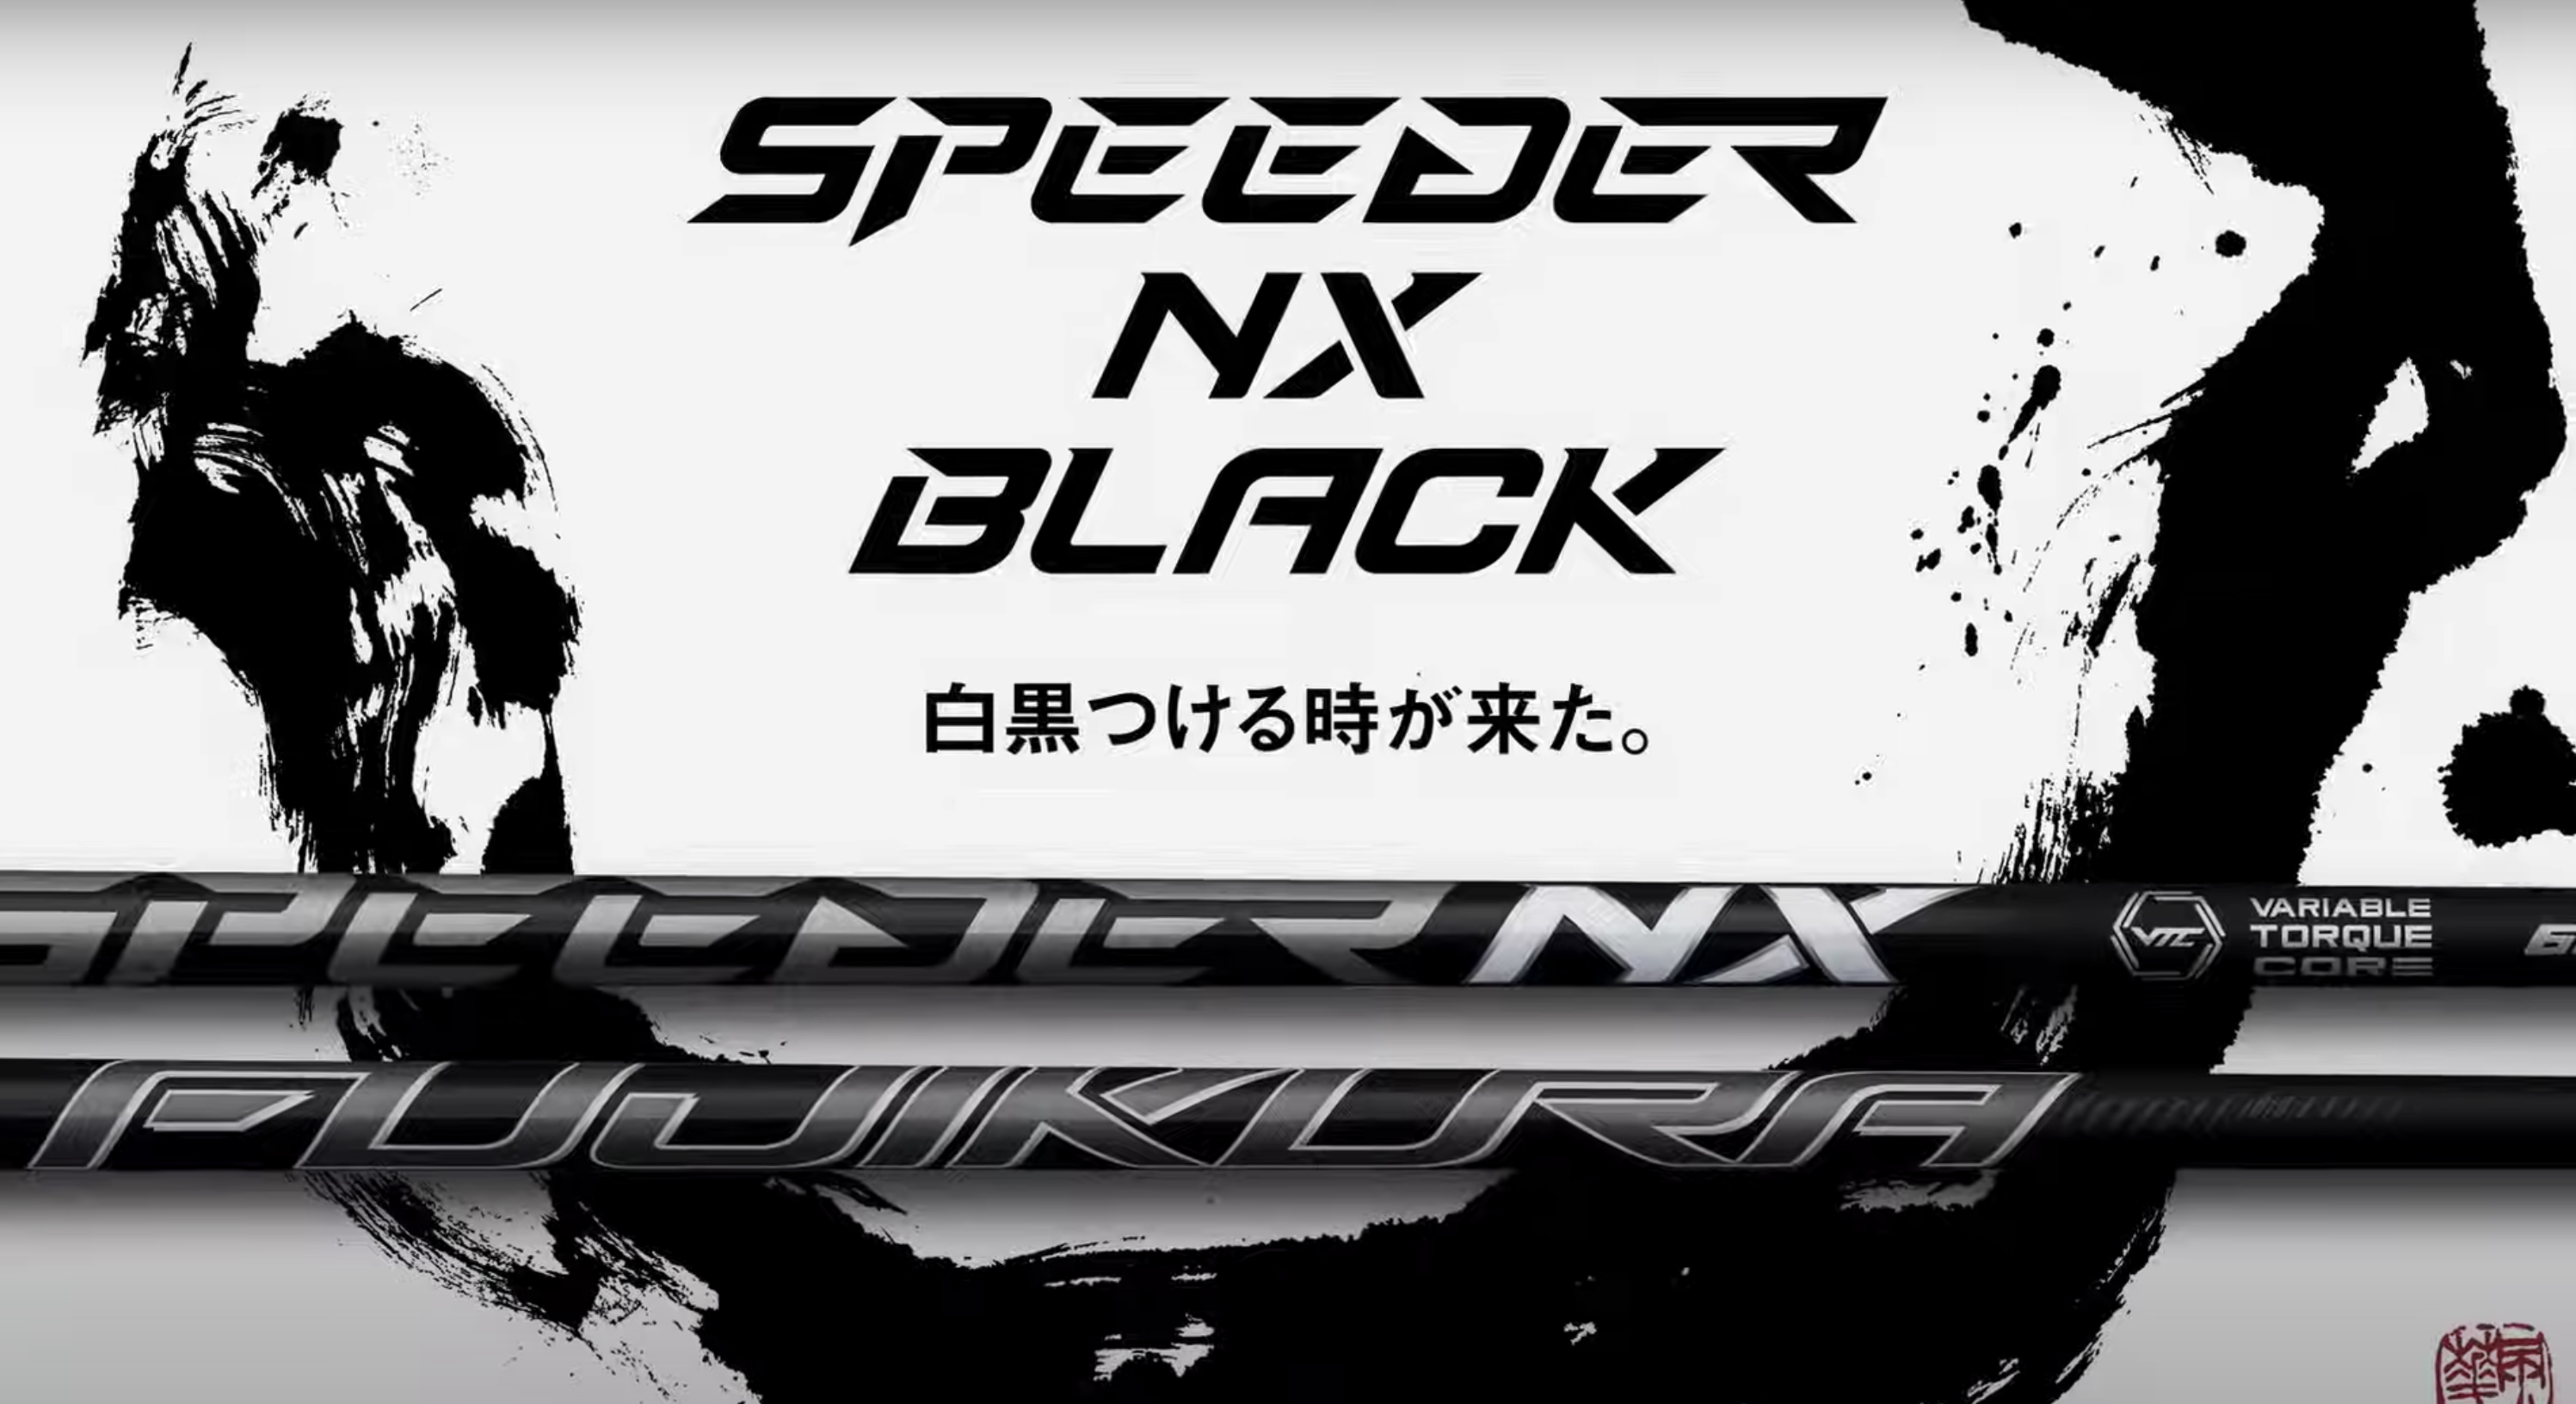 FUJIKURA「SPEEDER NX BLACK」